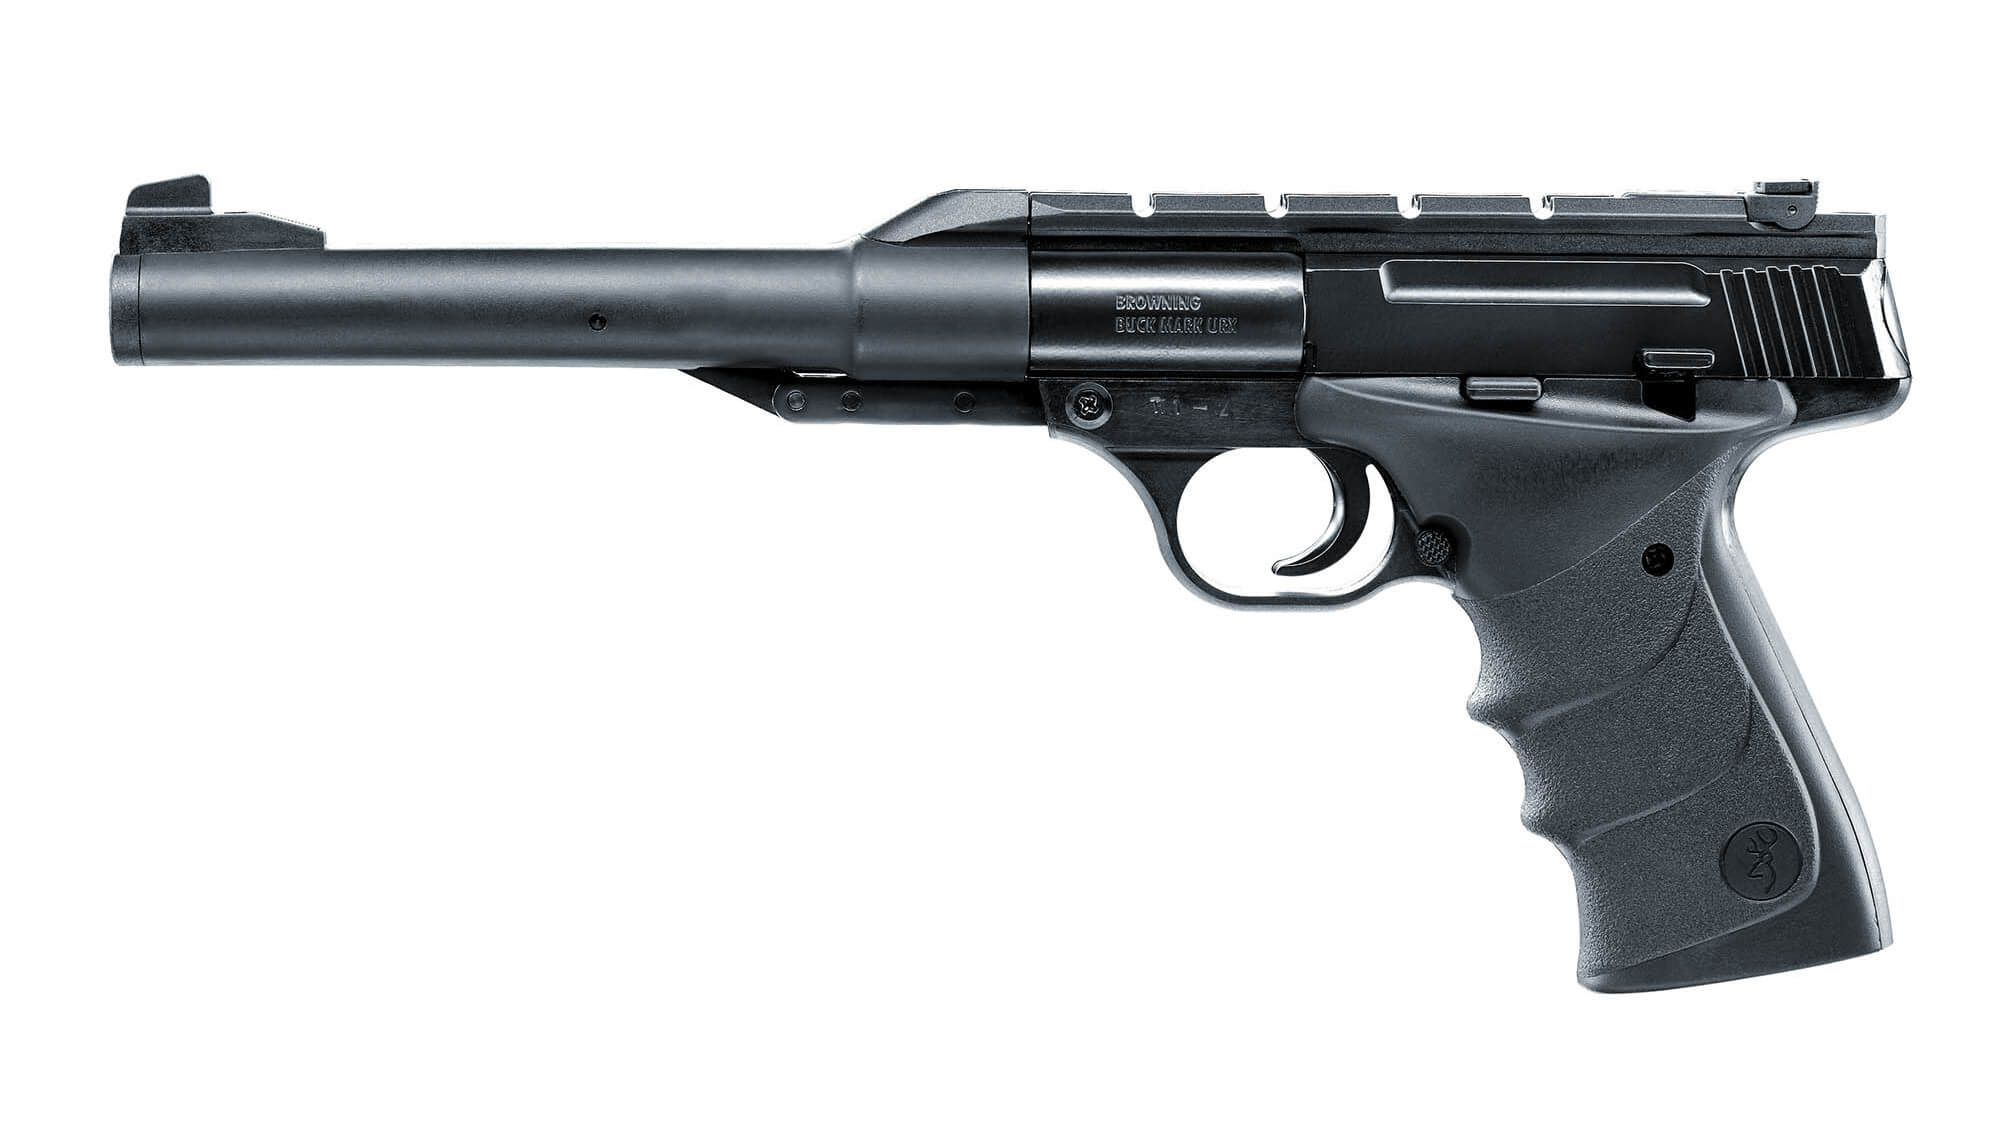 Browning Buck Mark URX Luftpistol, 4,5 mm